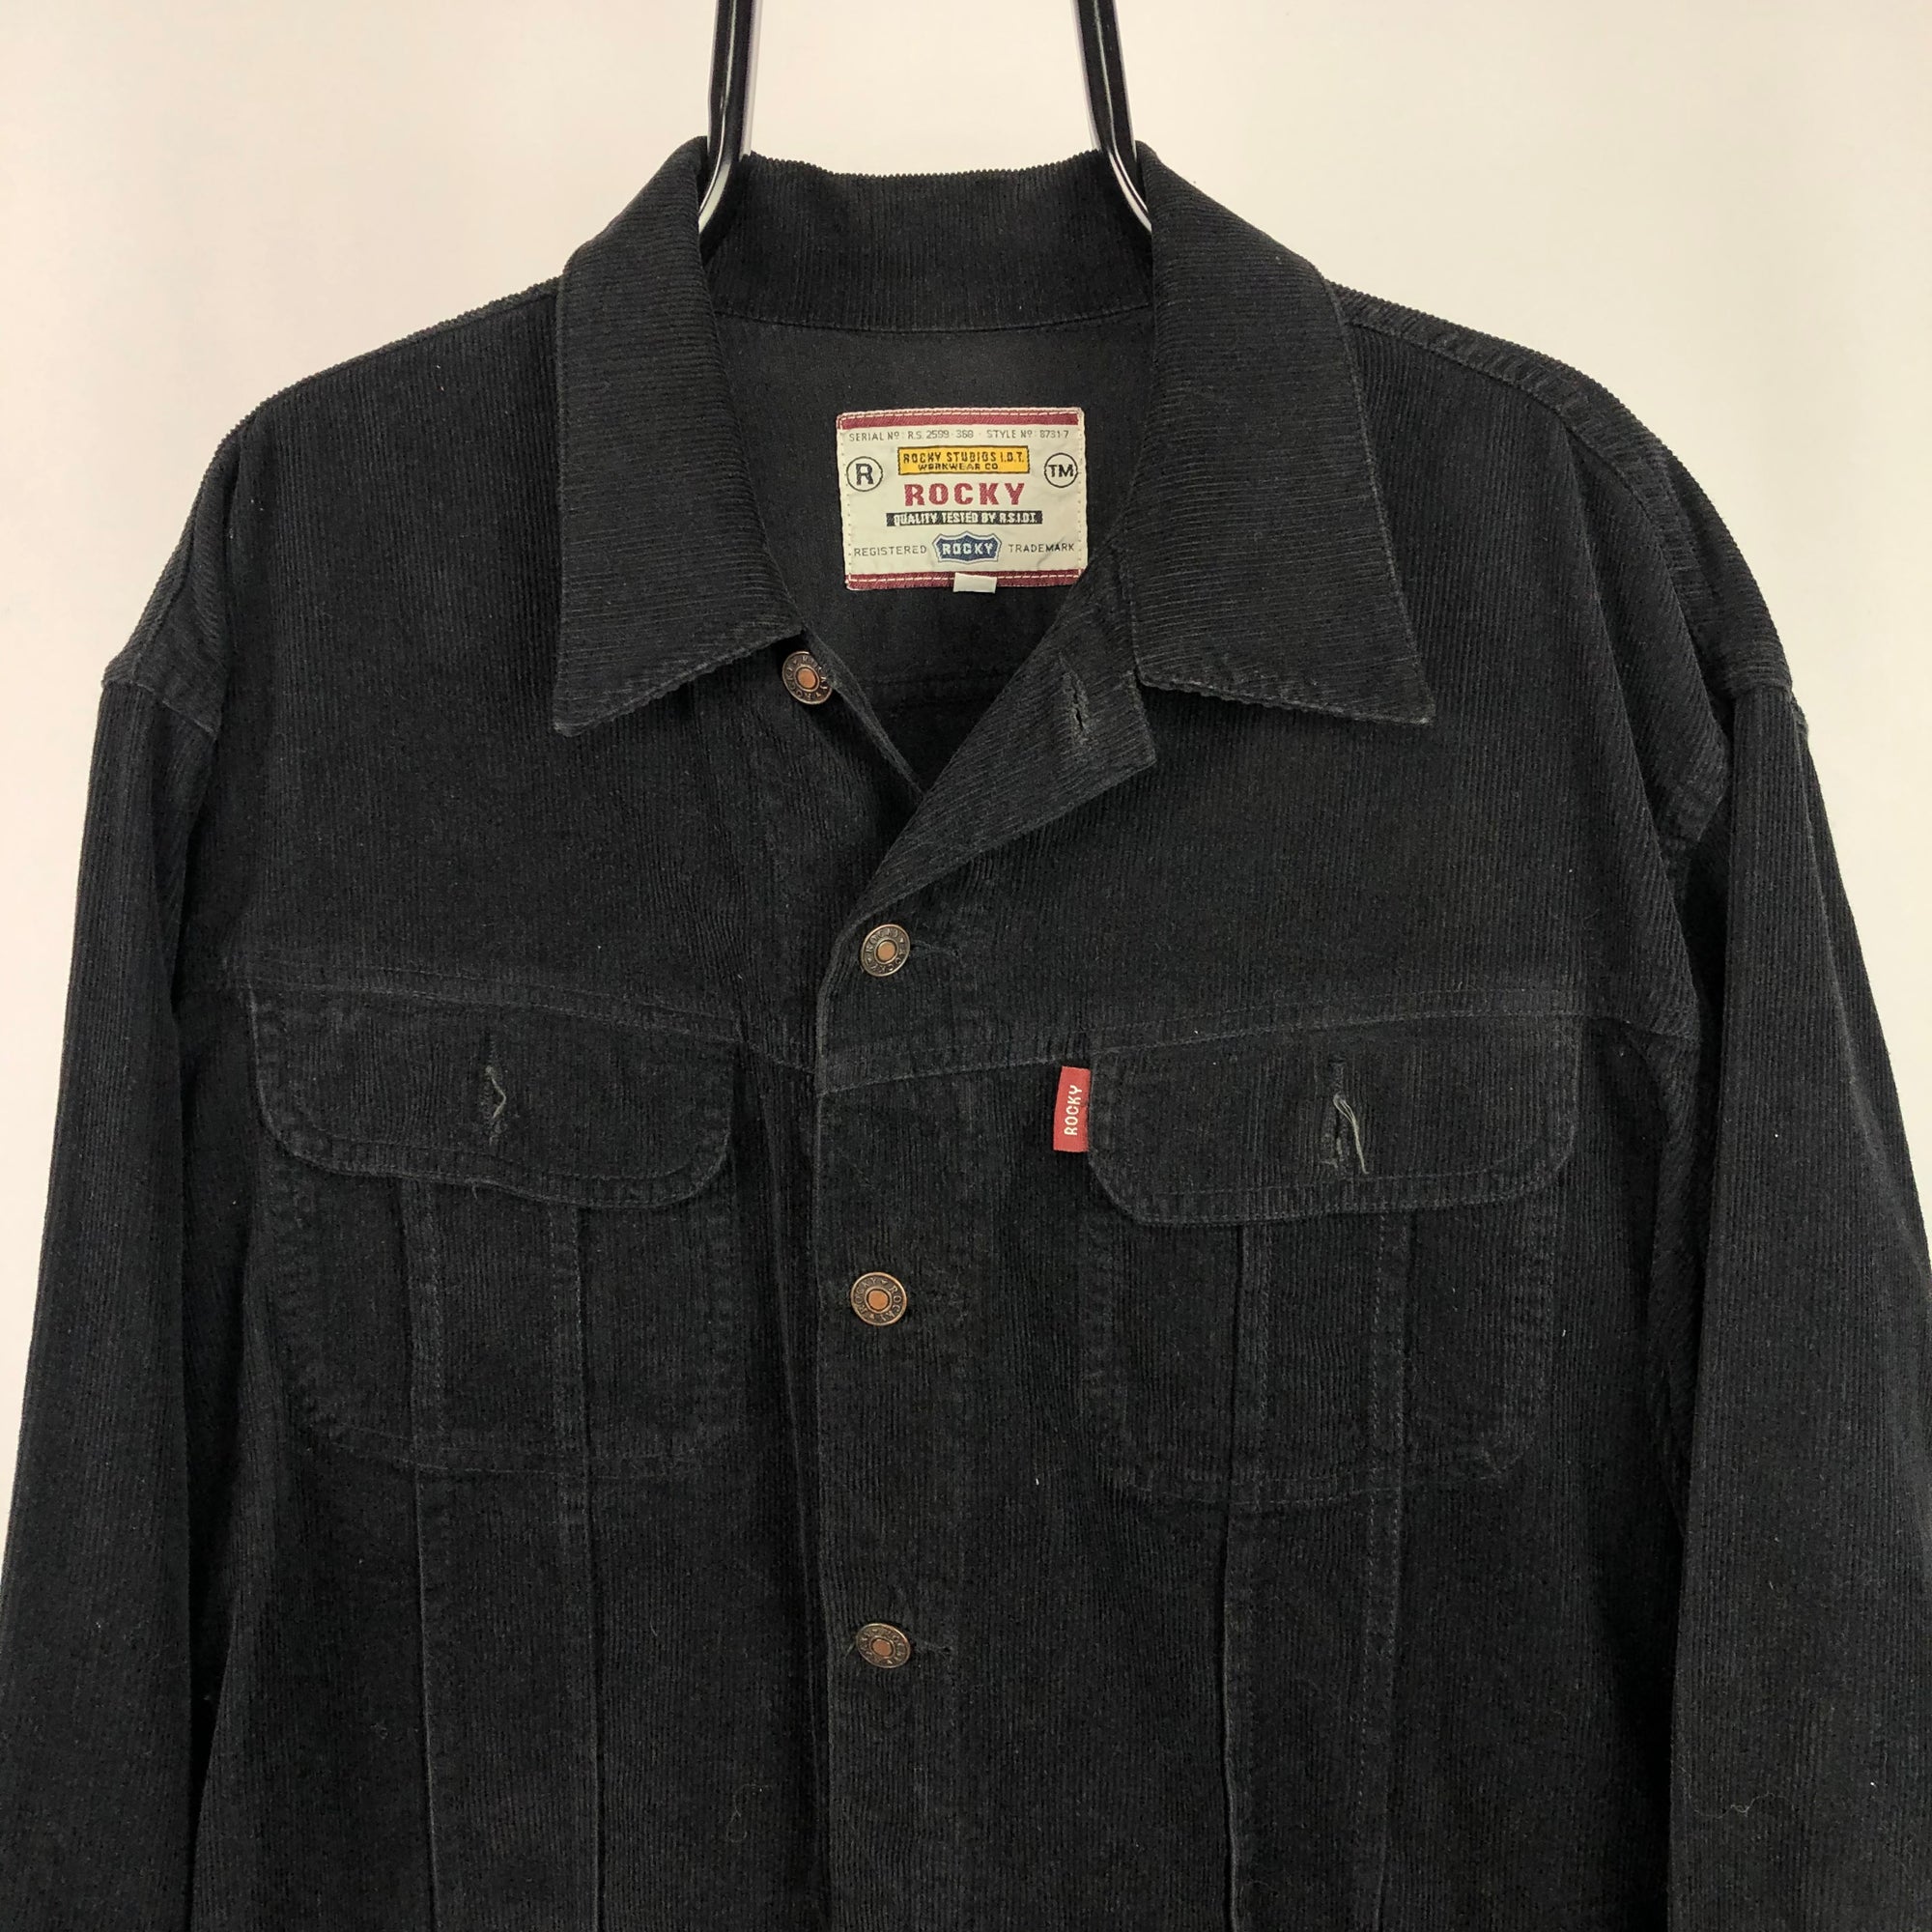 Vintage Corduroy Shirt in Black - Men's Medium/Women's Large